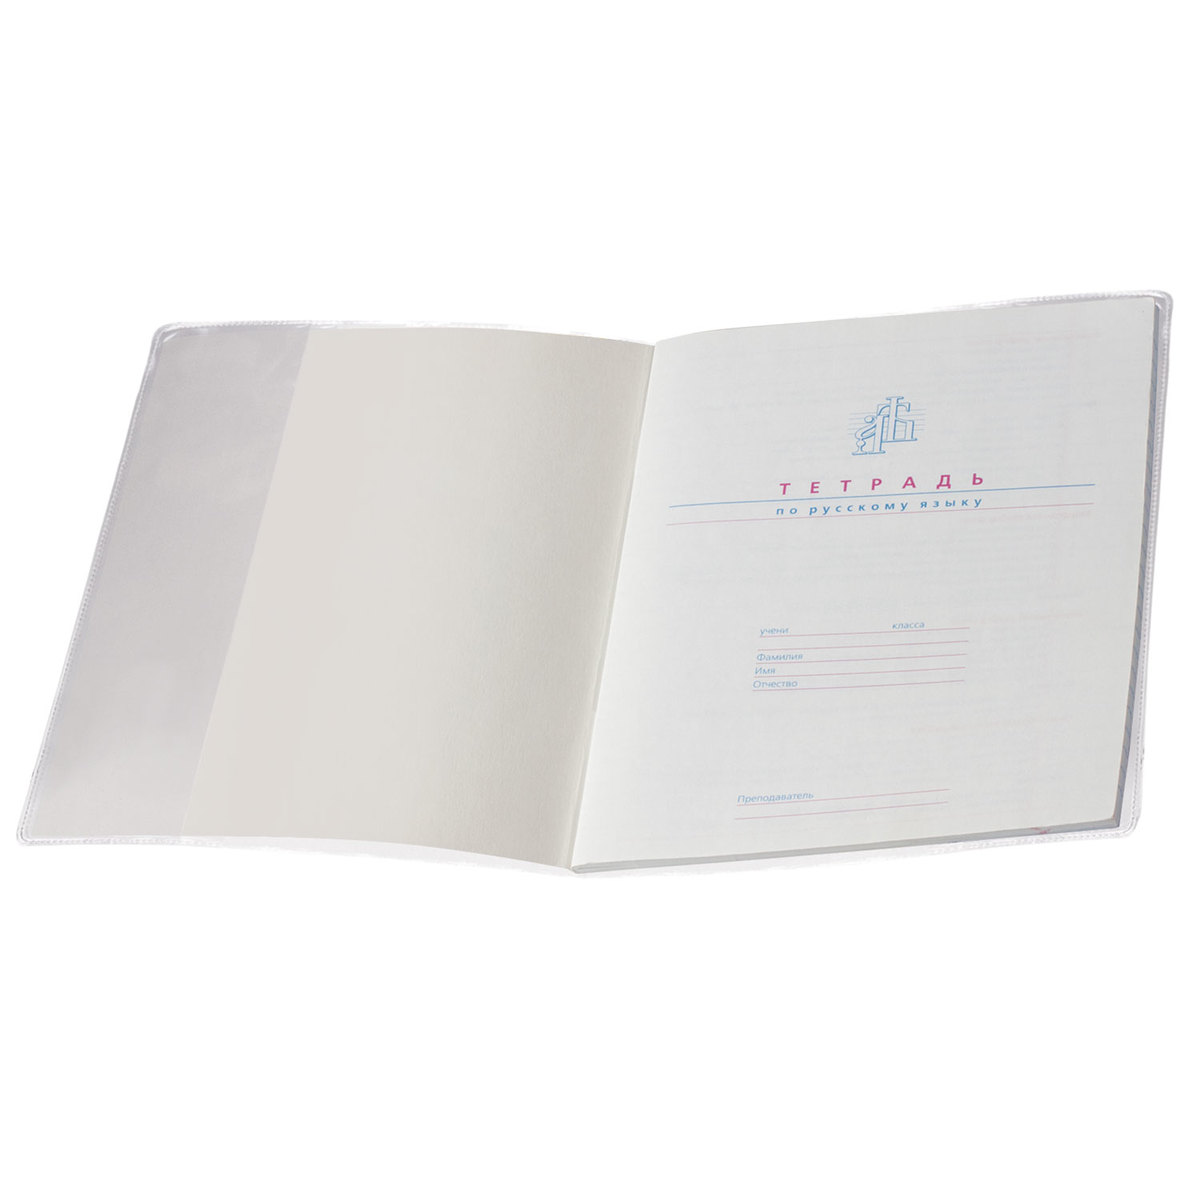 Обложки Пифагор для тетрадей и дневника 10 шт прозрачные - фото 10